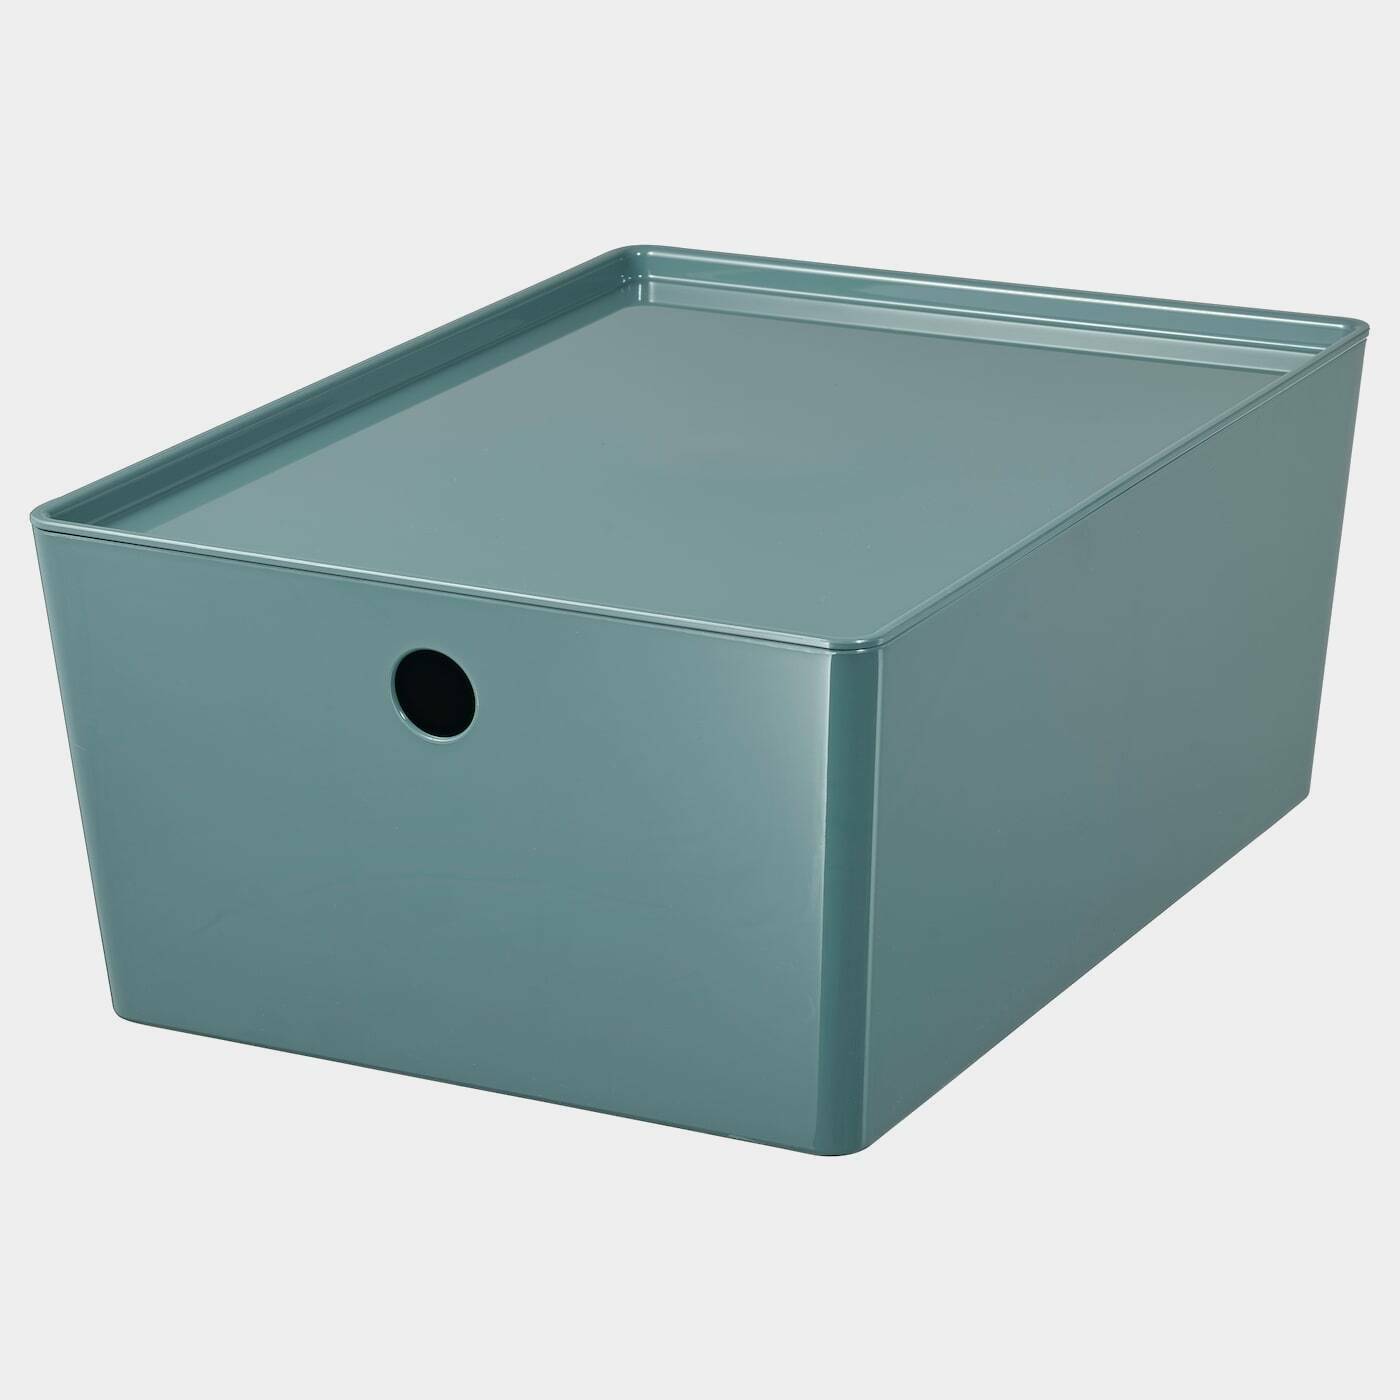 KUGGIS Box mit Deckel  -  - Möbel Ideen für dein Zuhause von Home Trends. Möbel Trends von Social Media Influencer für dein Skandi Zuhause.